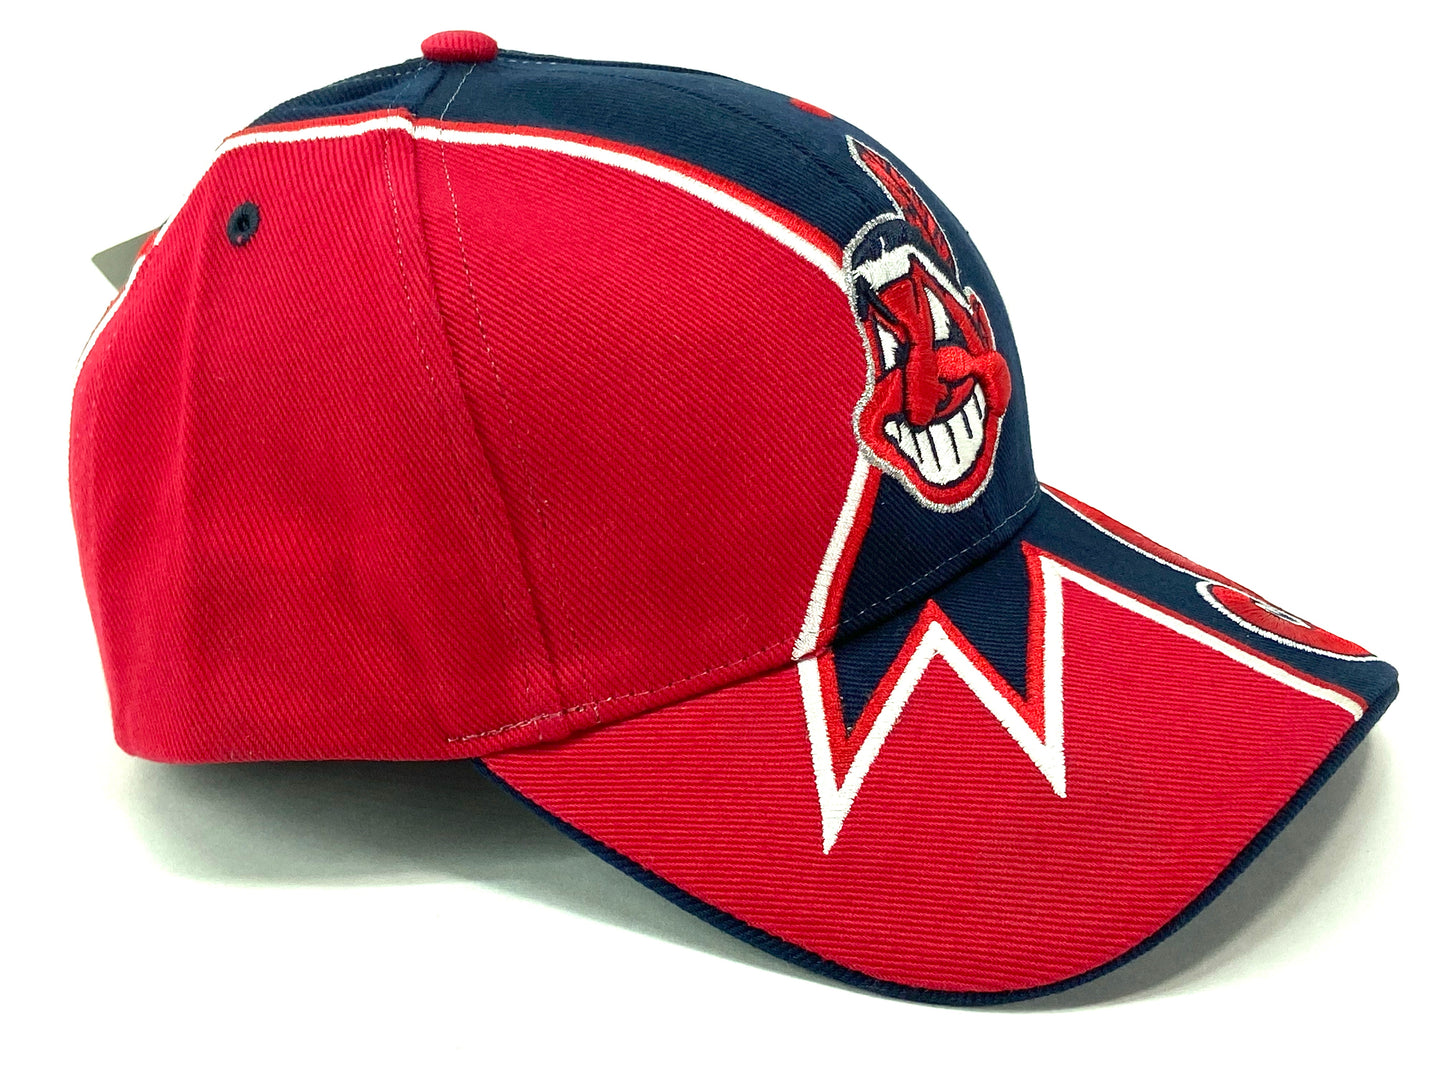 Cleveland Indians Vintage MLB "Splash" Hat by Twins Enterprise